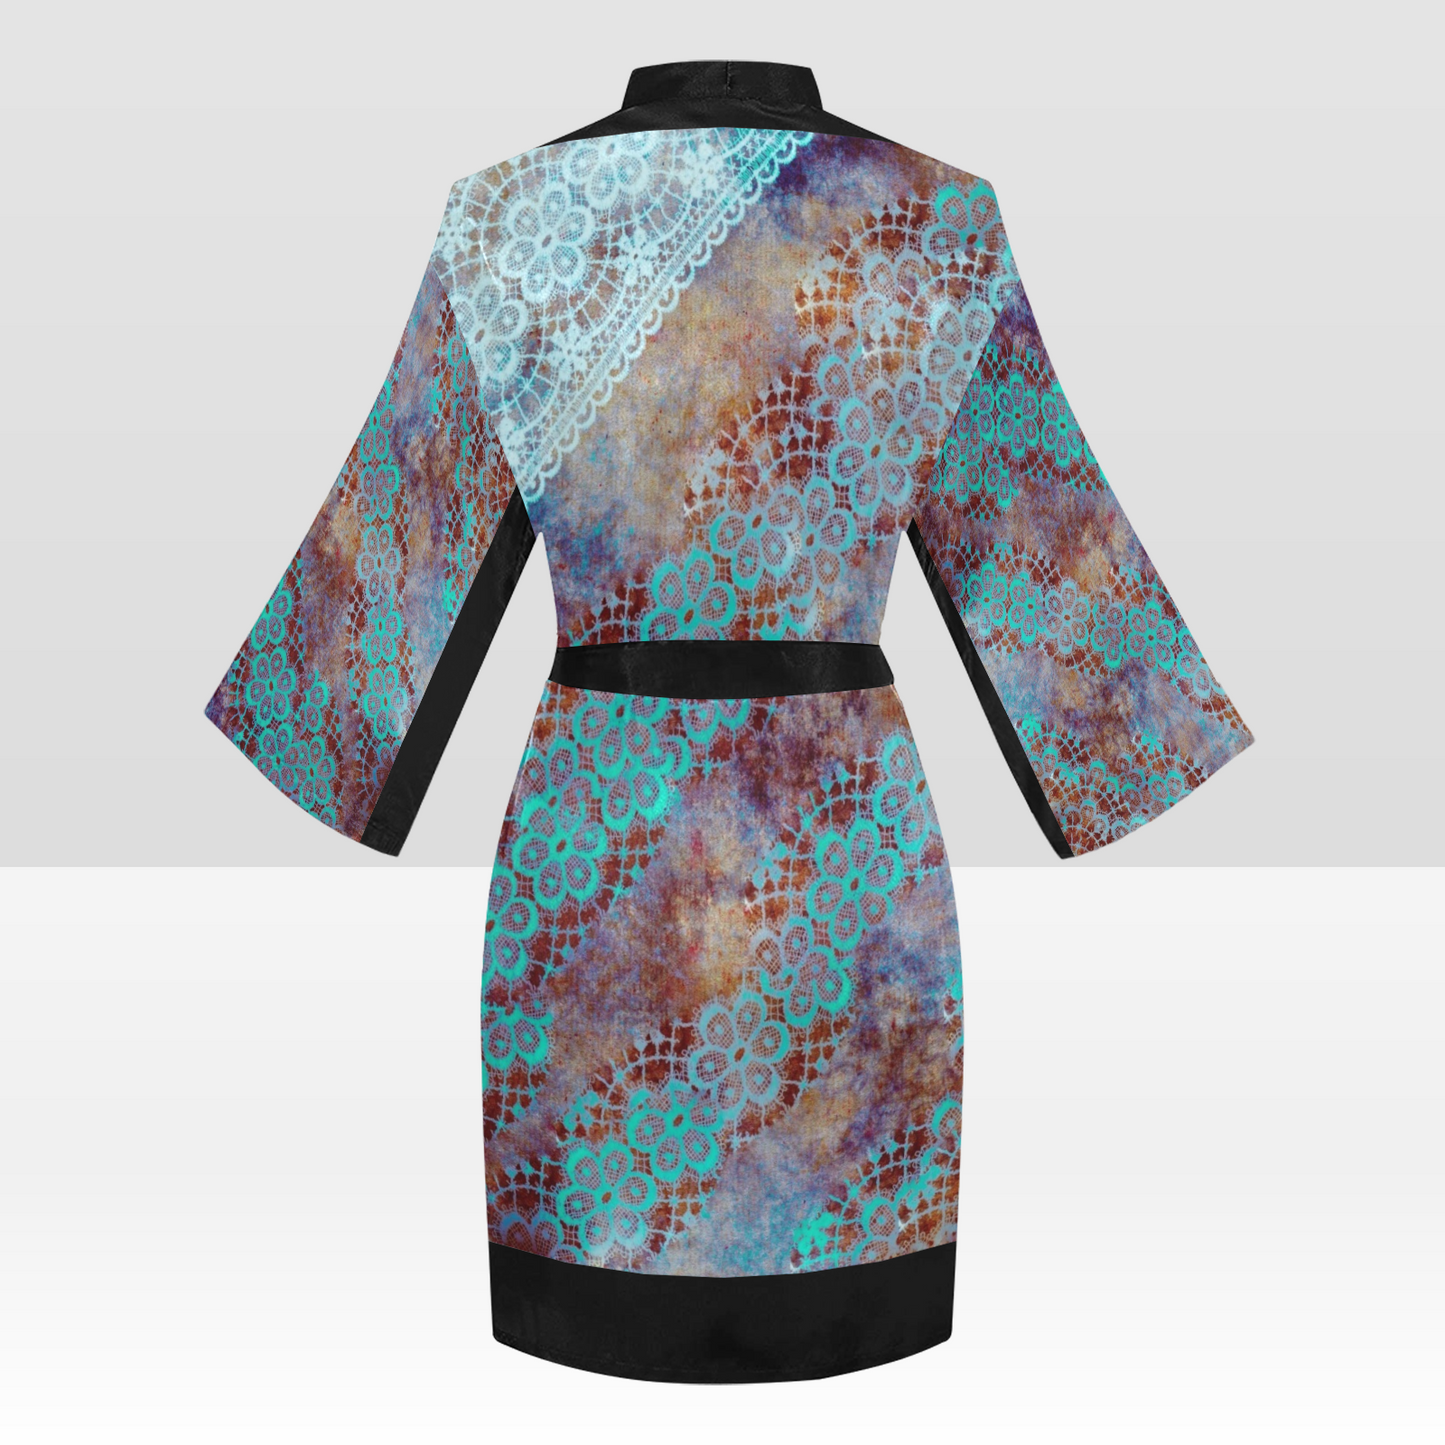 Victorian Lace Kimono Robe, Black or White Trim, Sizes XS to 2XL, Design 37